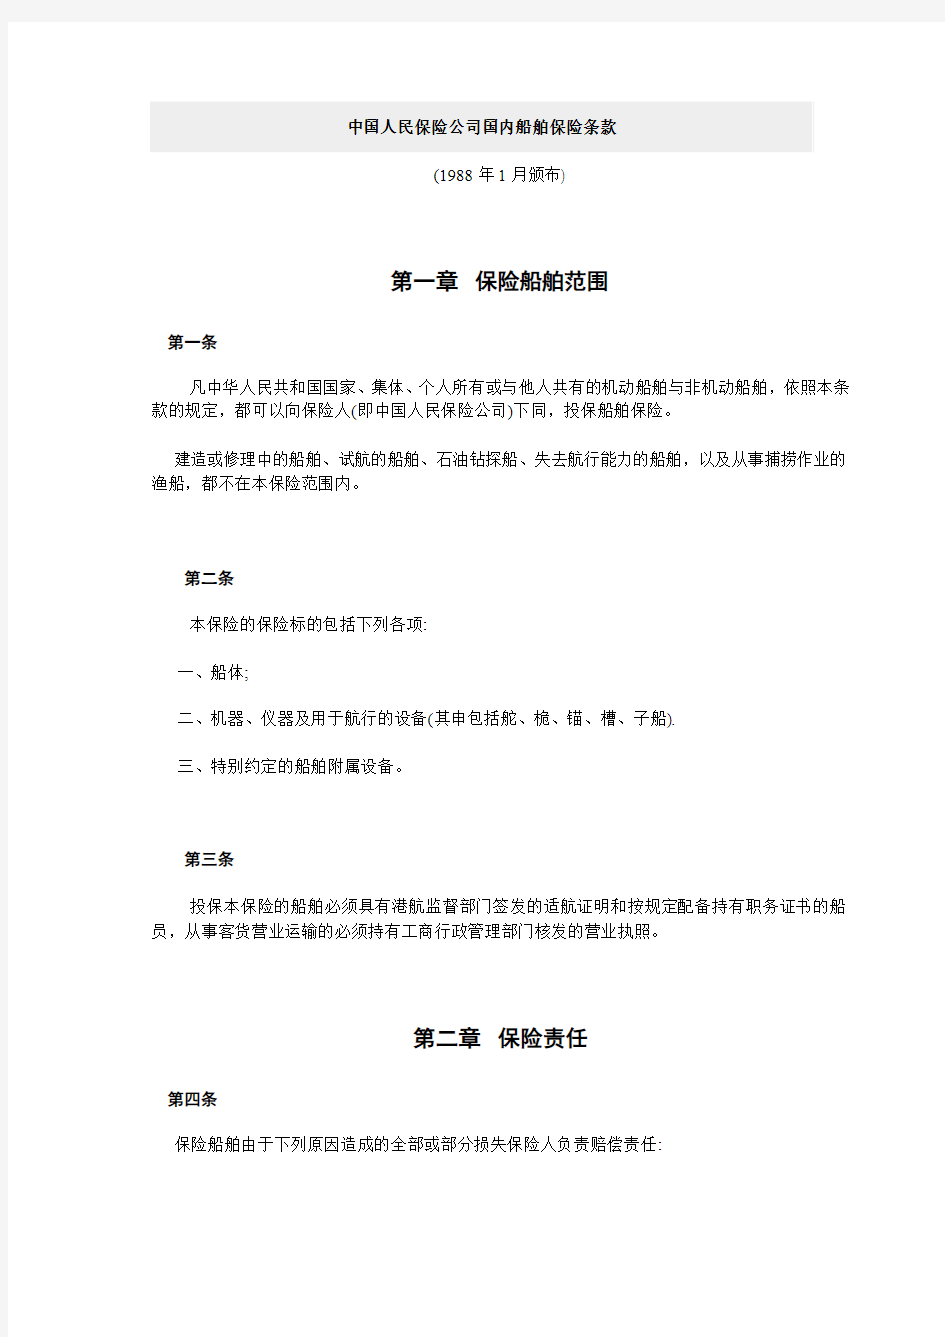 中国人民保险公司国内船舶保险条款